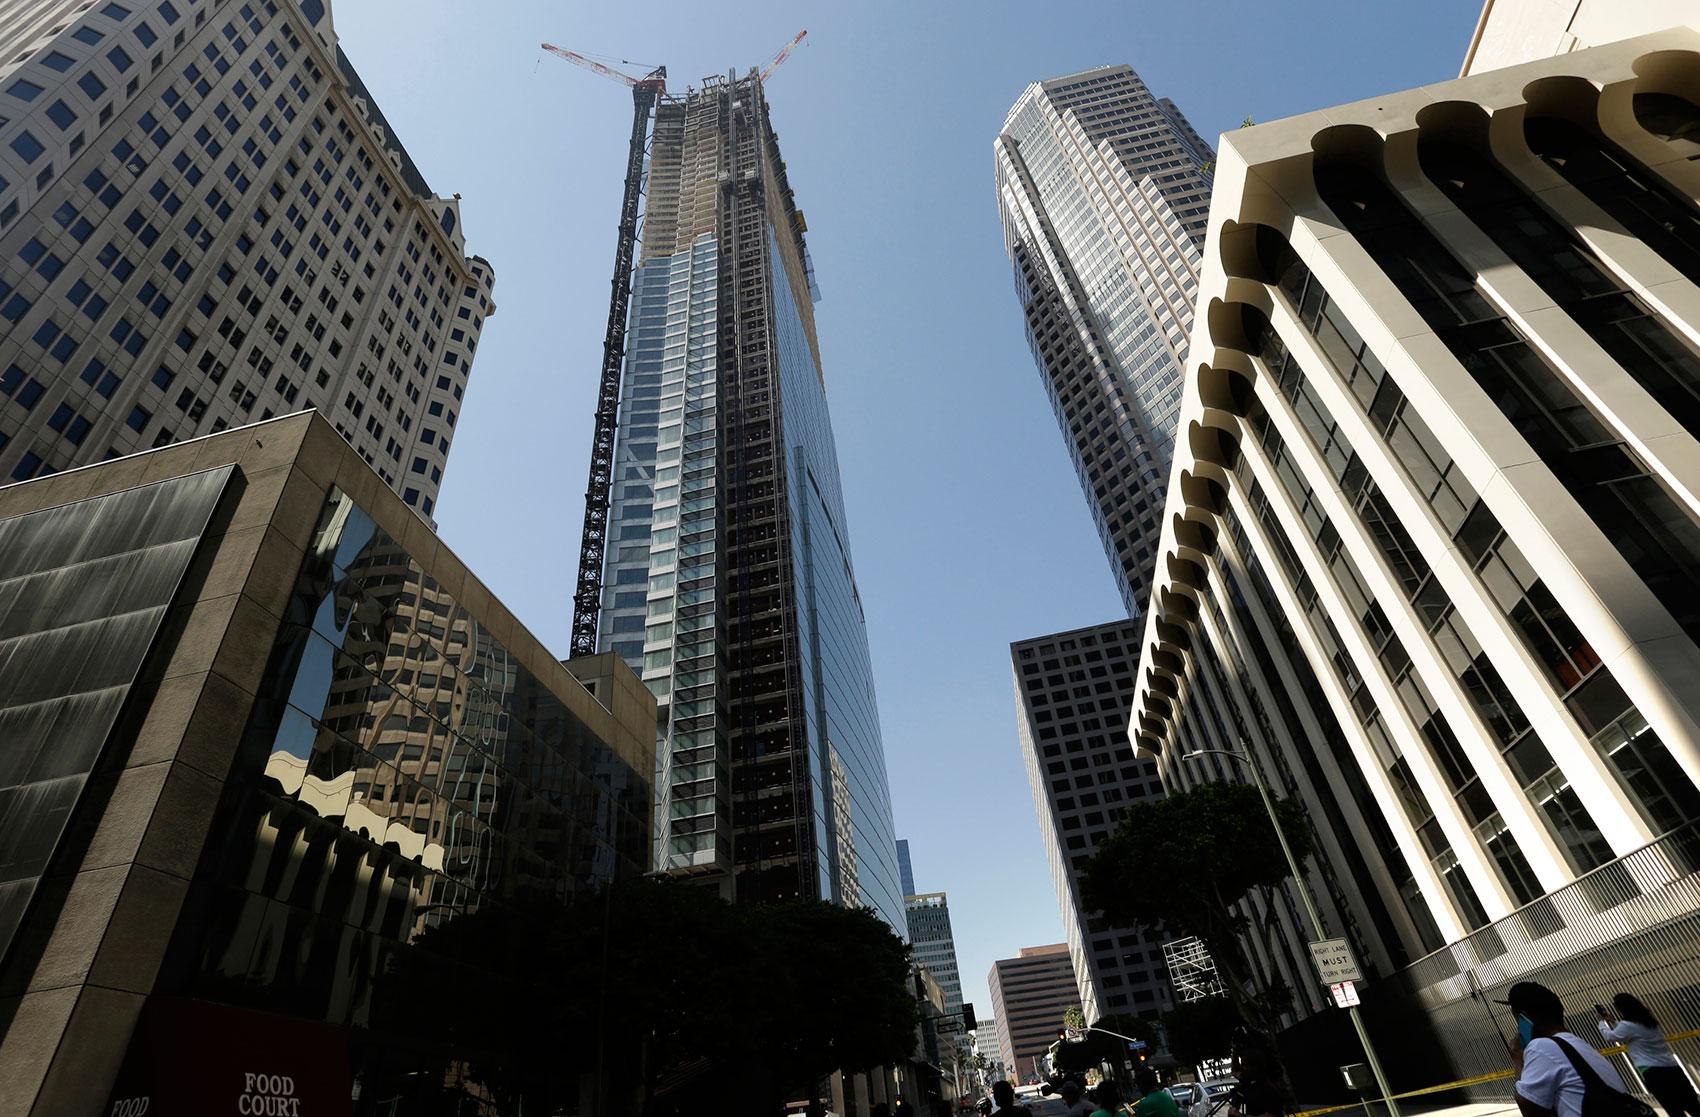 En byggarbetare dog efter ett fall från en skyskrapa i Los Angeles.